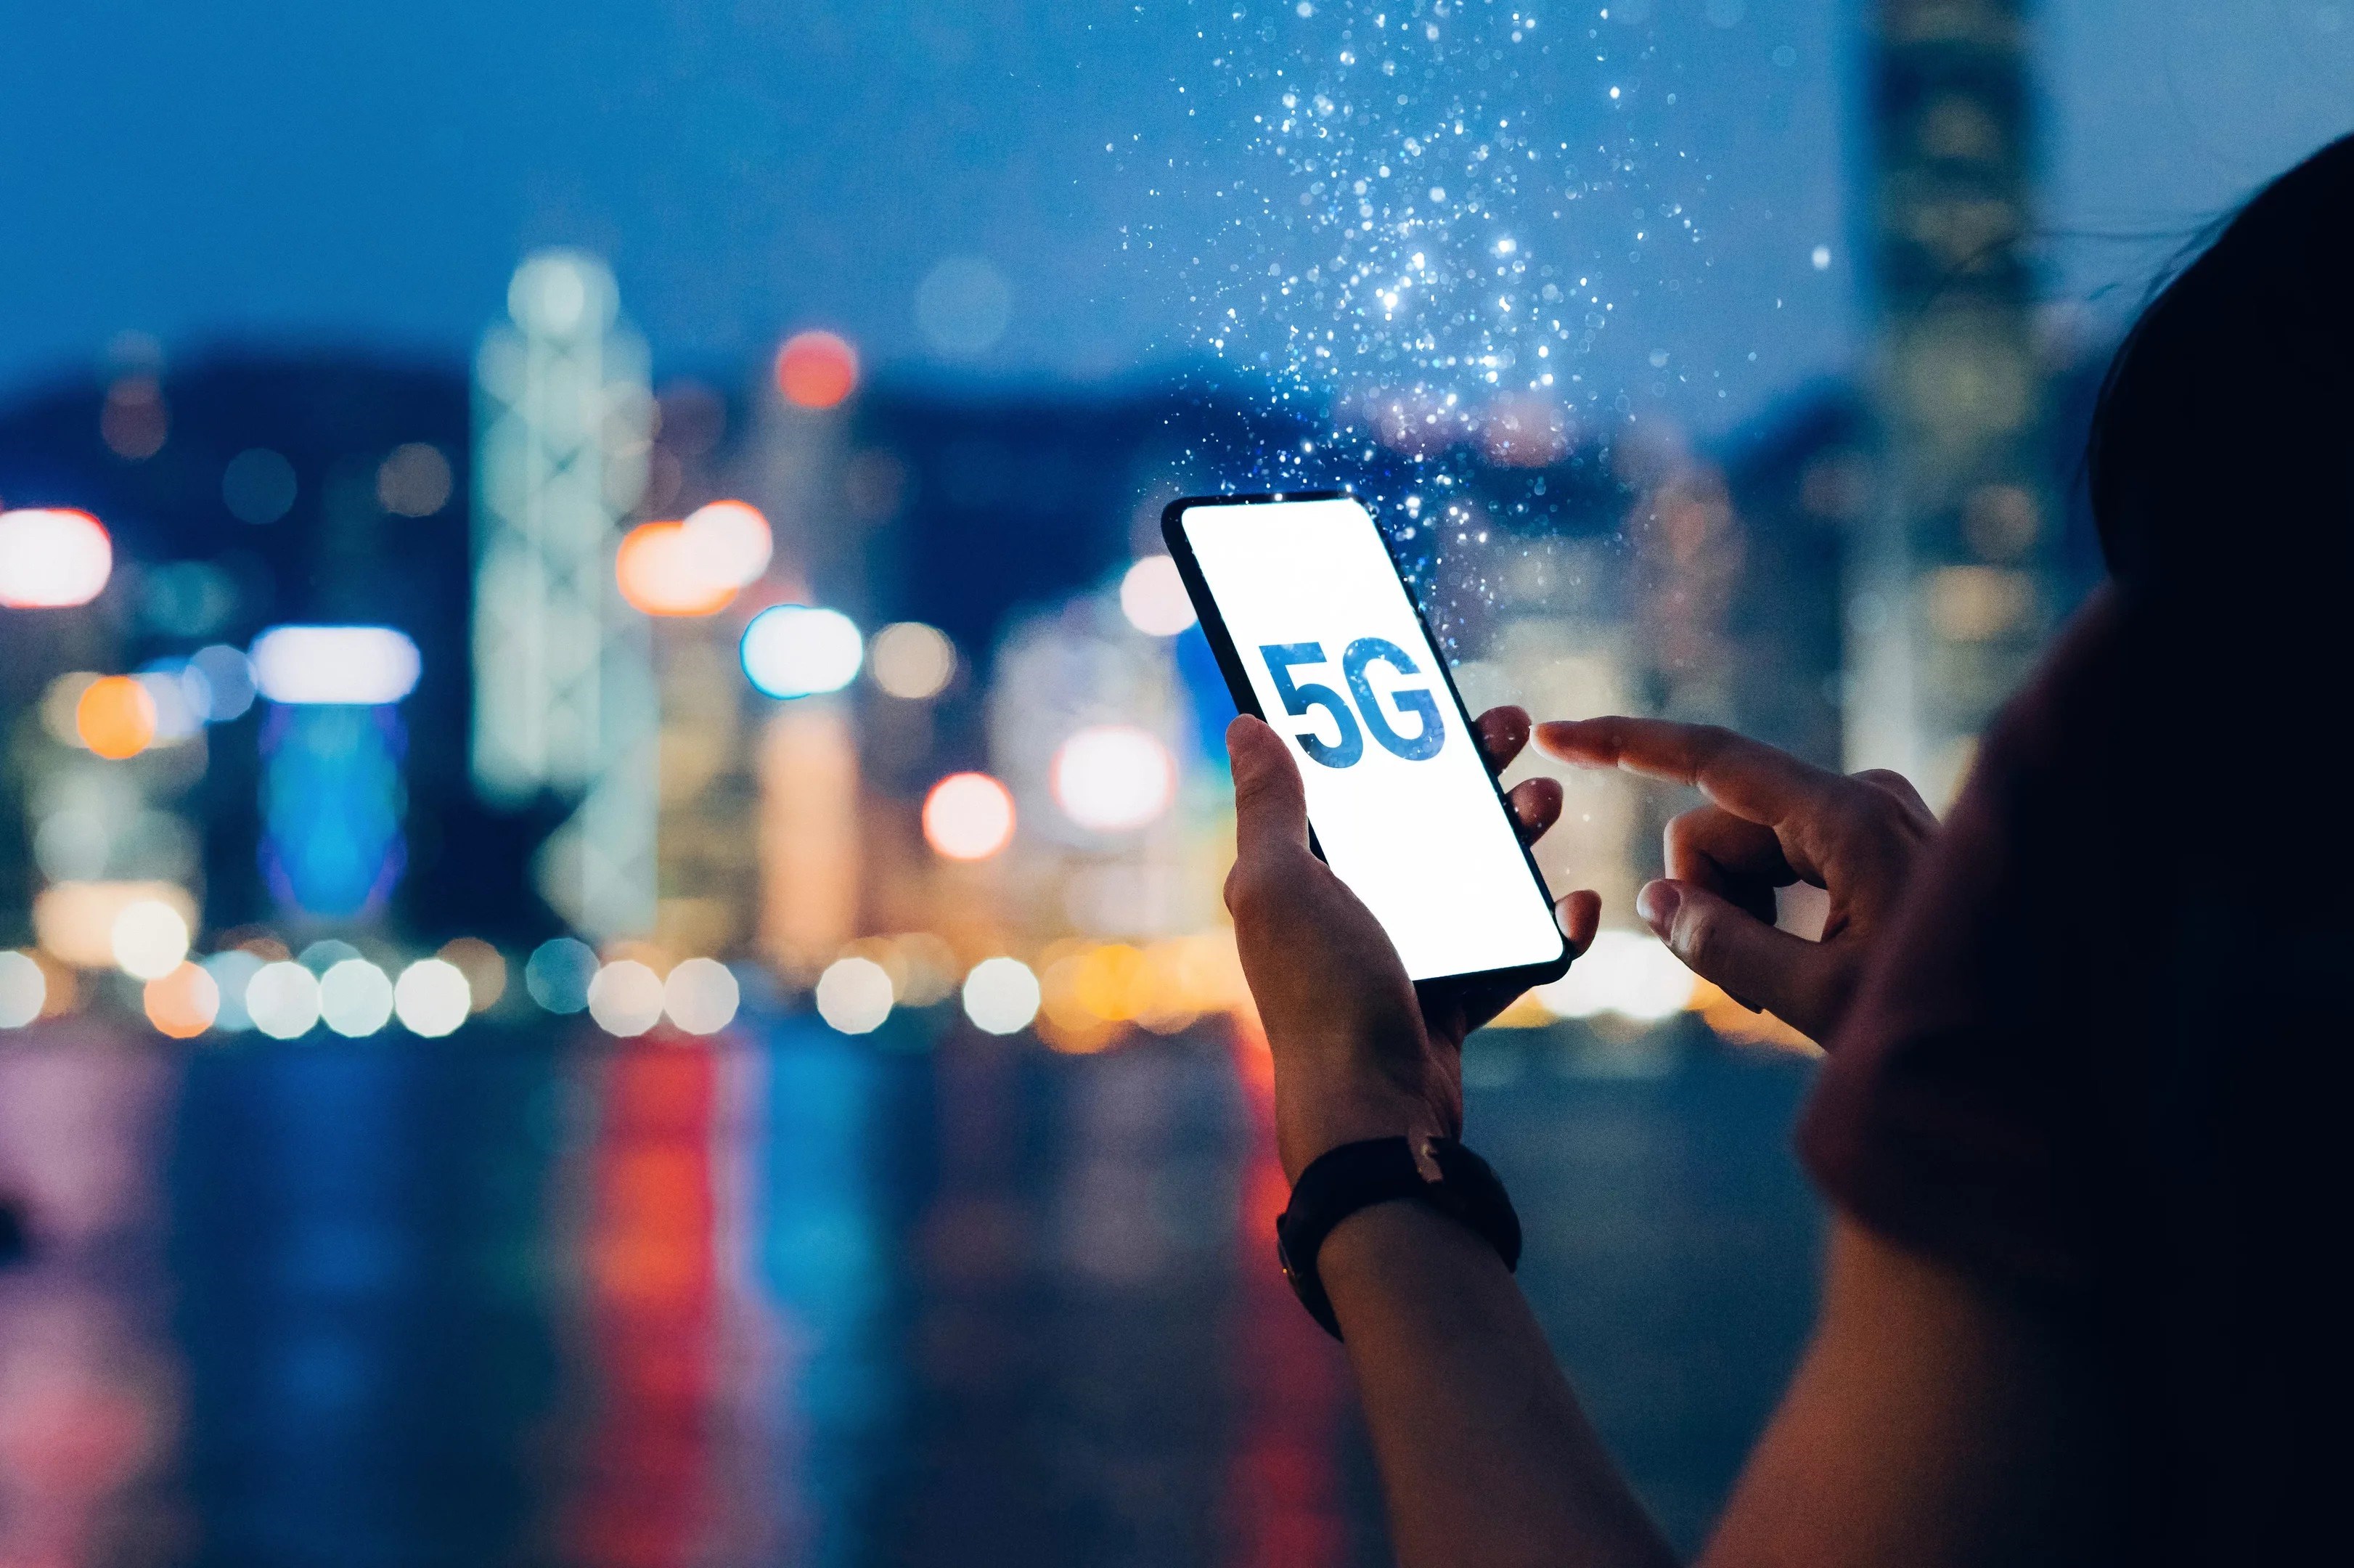 Dünya genelinde 5G kullanıcısı sayısı 1 milyarı geçti